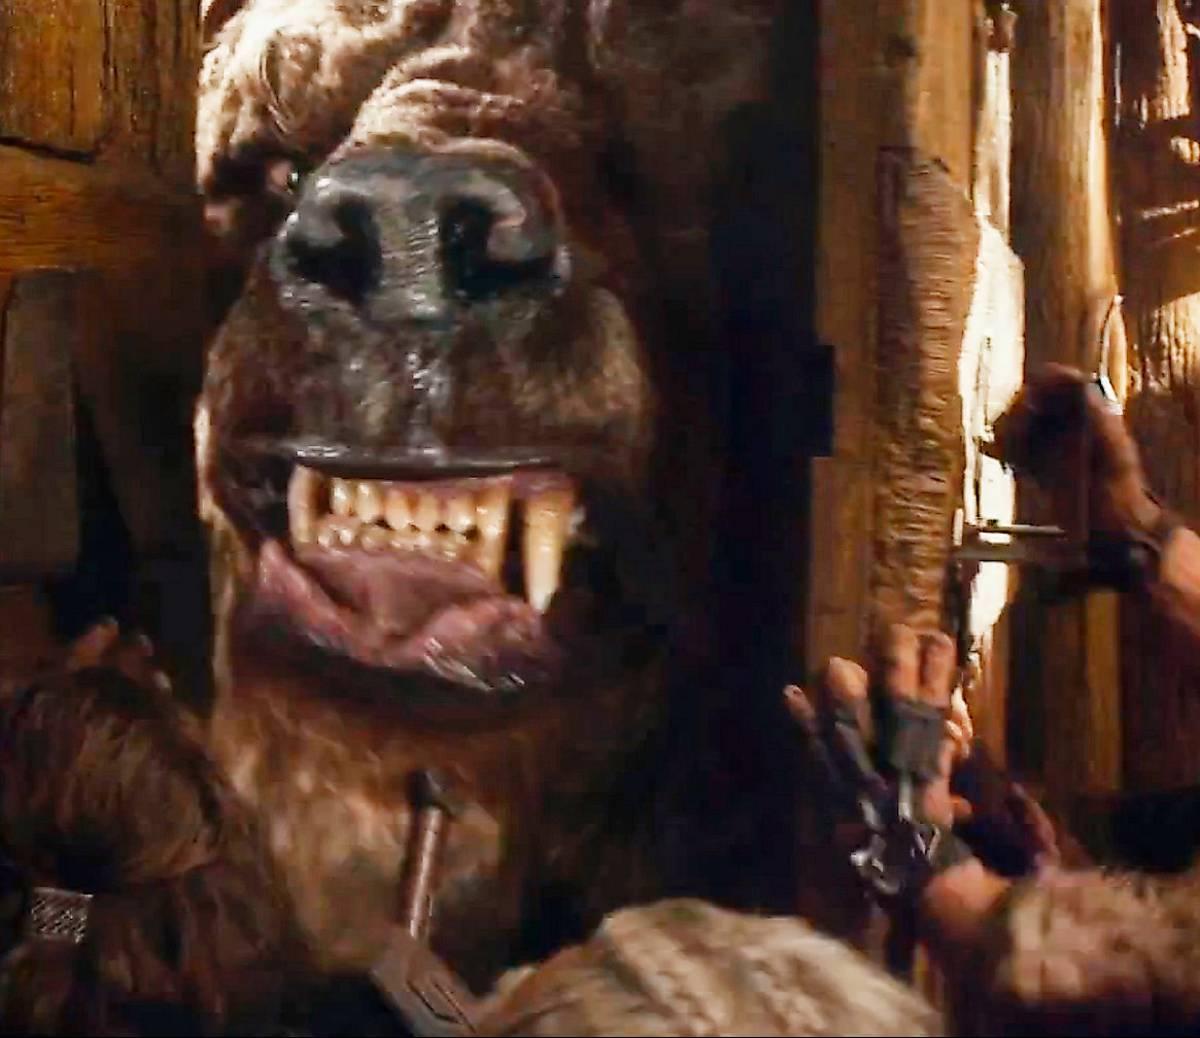 En väldig björnfigur dyker upp i trailern för ”Hobbit 2” och får fansen att spekulera i att det är Beorn, rollfiguren som Mikael Persbrandt spelar.